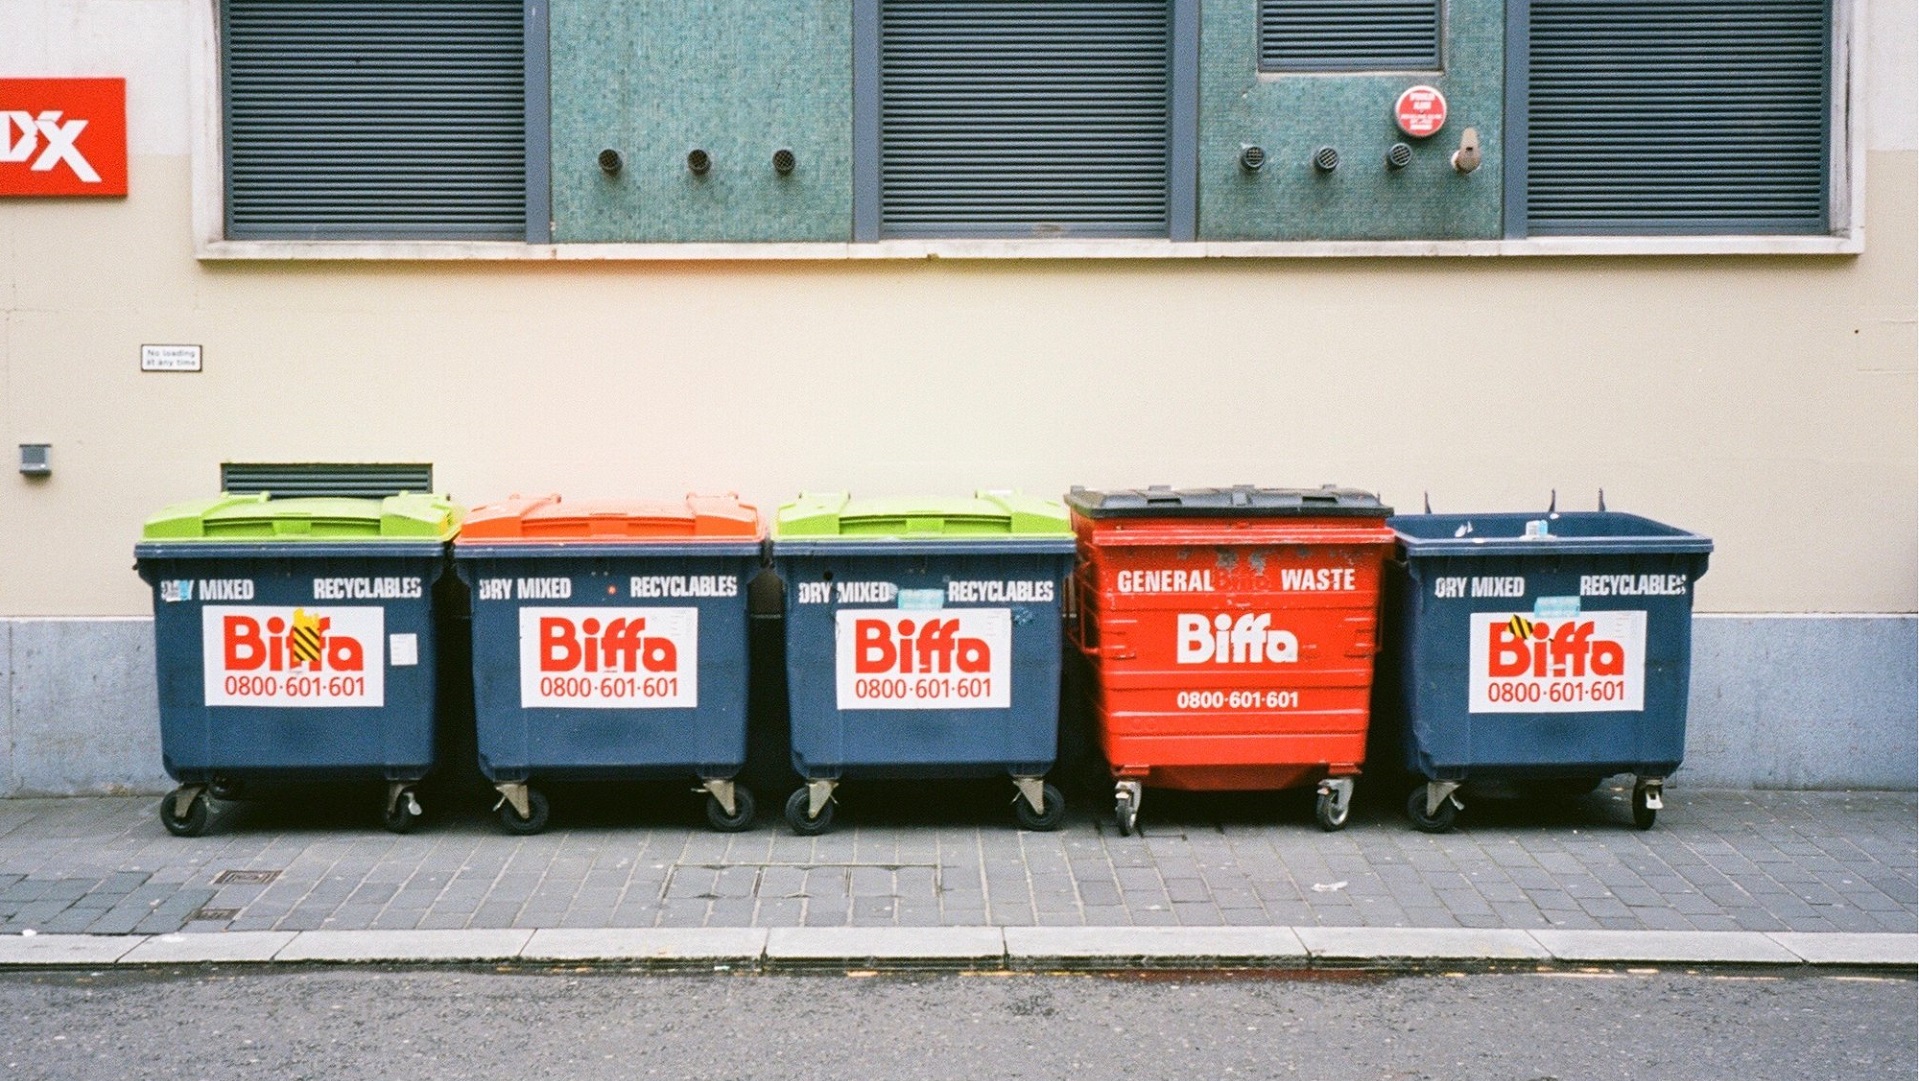 Biffa report rough sleeping in bins